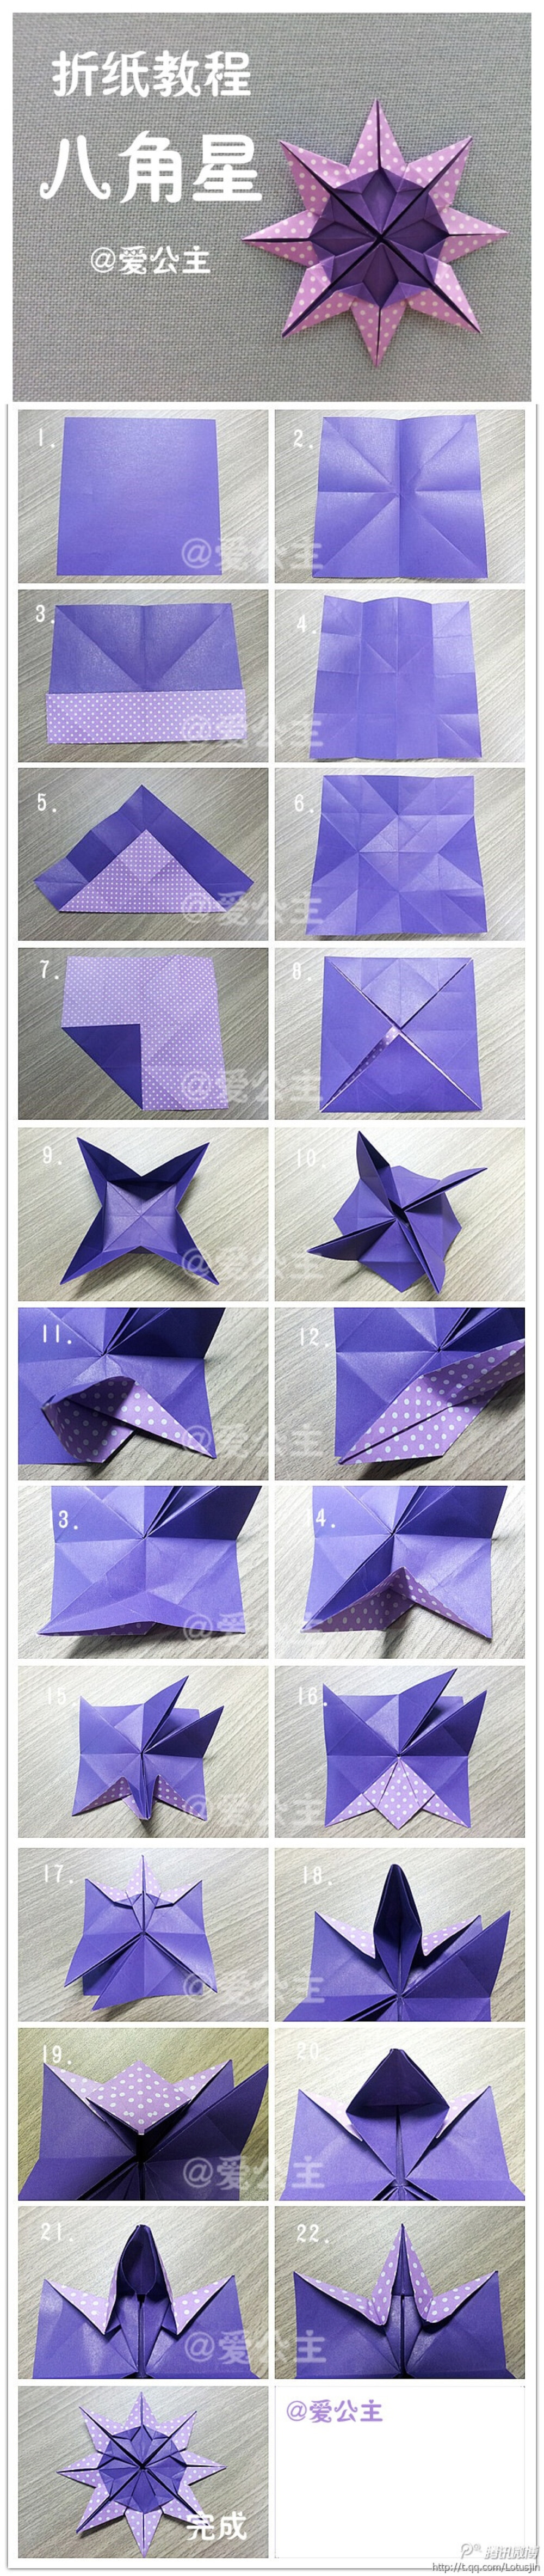 手工达人的折纸教程,图片分享自@爱公主